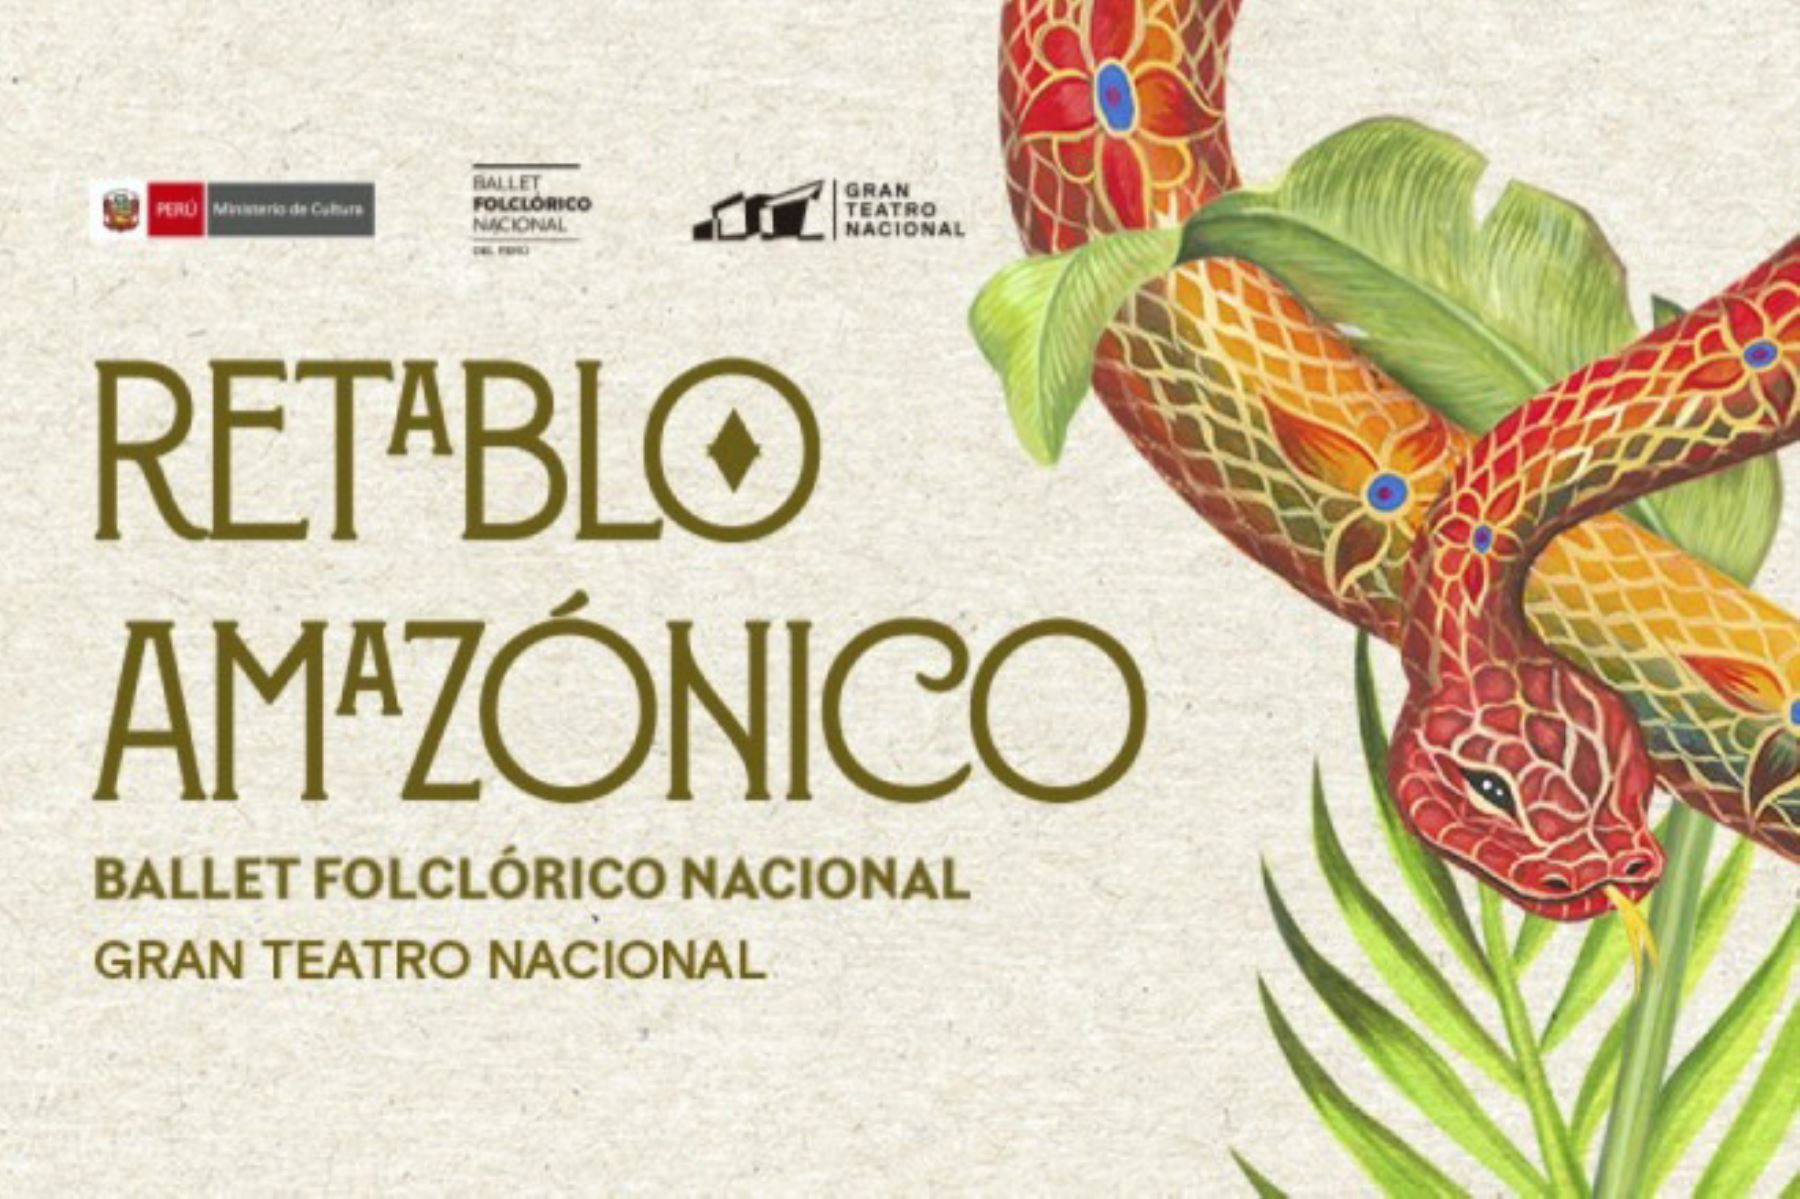 “Retablo Amazónico” una puesta en escena que incluye música en vivo, proyecciones y movimientos de la danza contemporánea inspirados en nuestra selva peruana. Un espectáculo que, mediante una visión moderna, busca acercarnos a esta cautivante región del Perú.